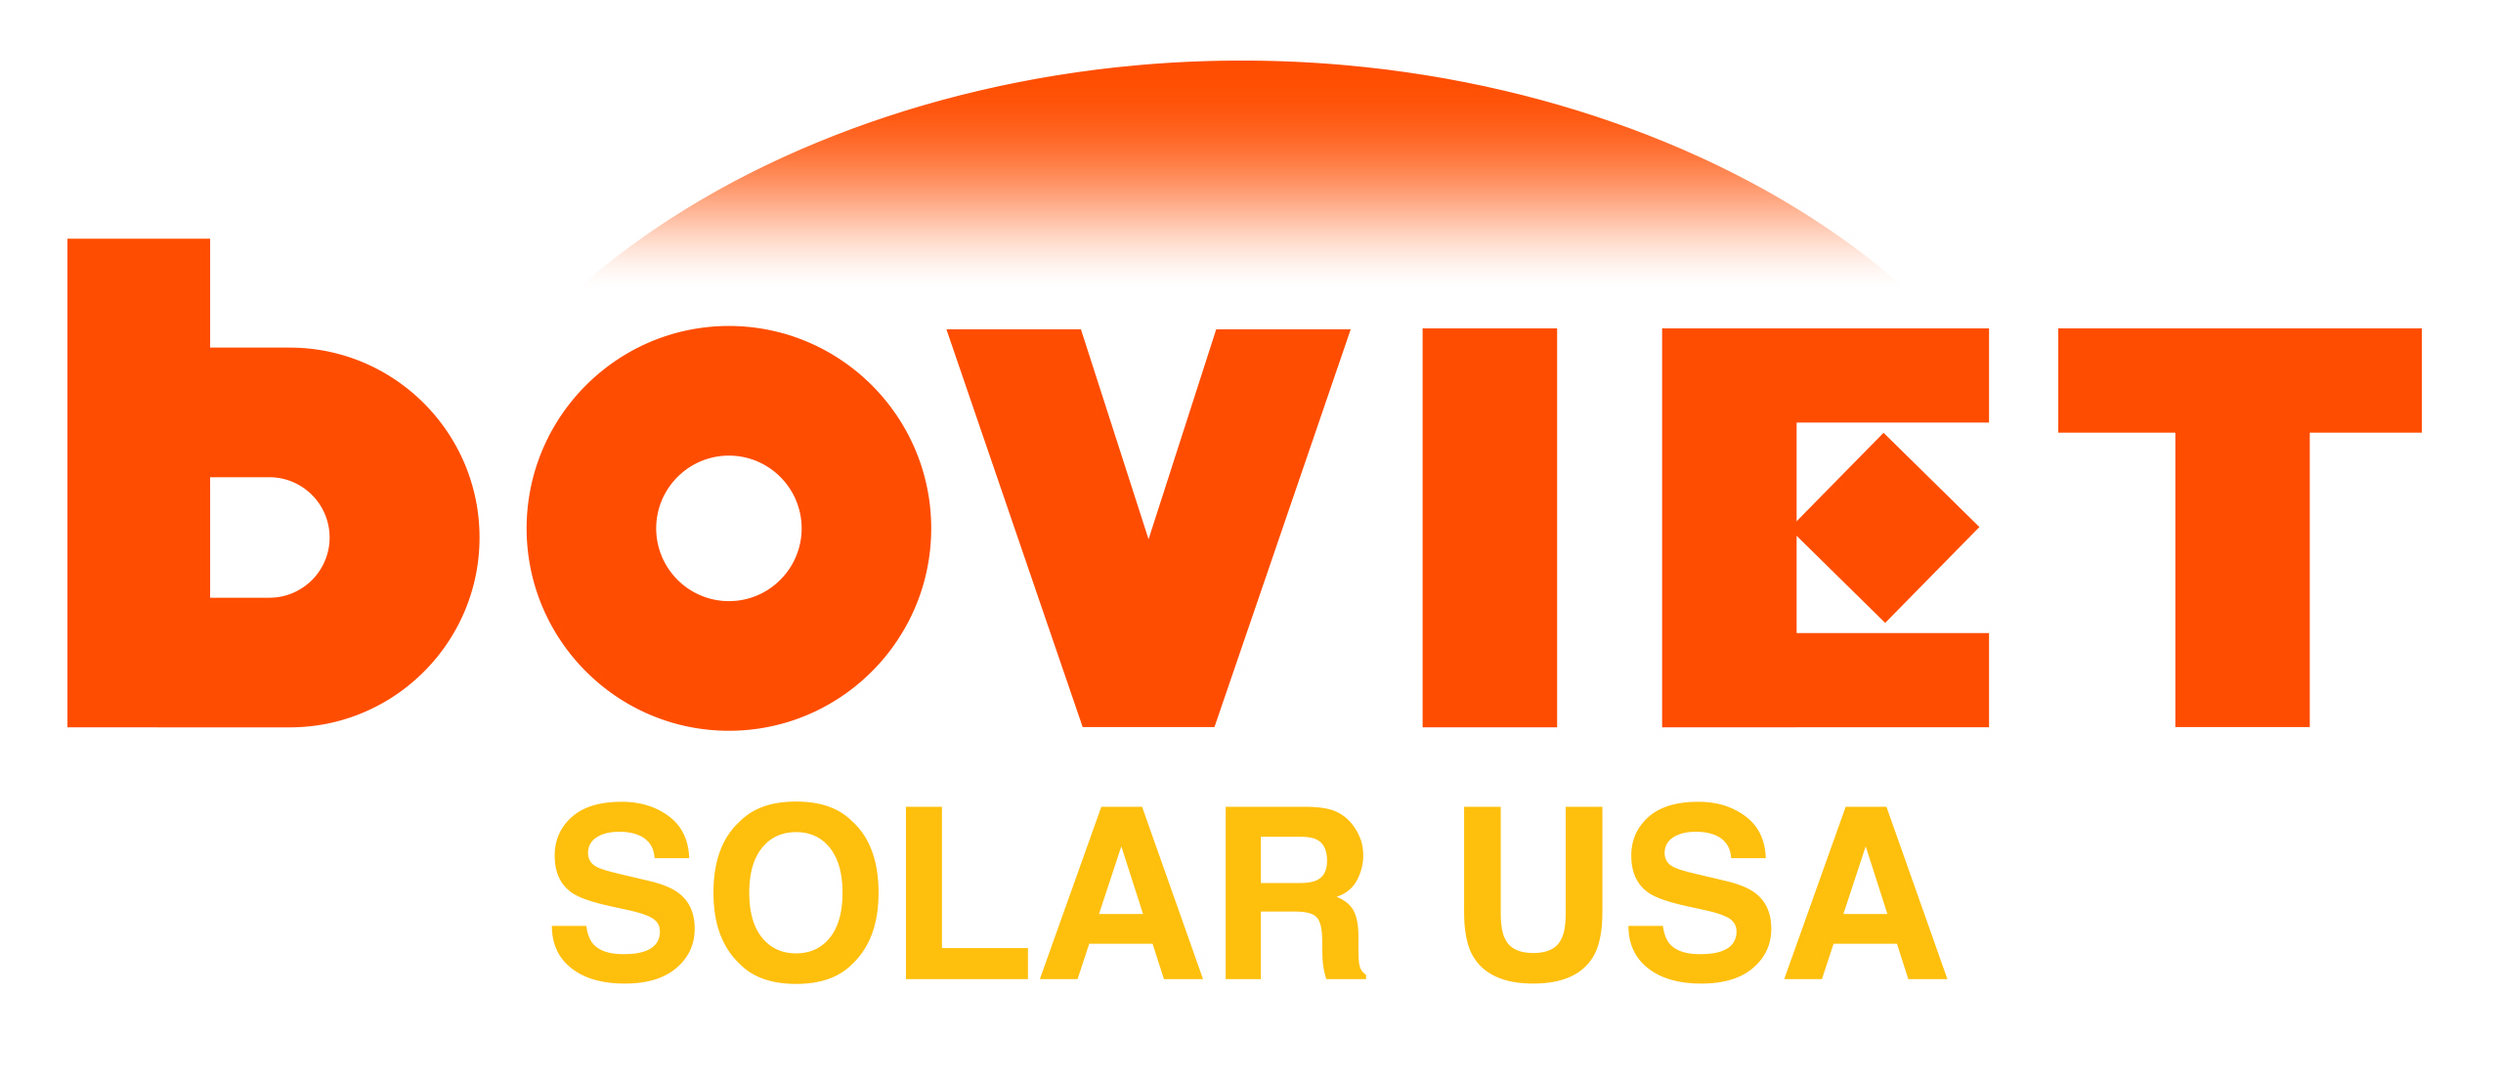 Boviet_Solar_USA_Logo_Yellow_Update.jpg